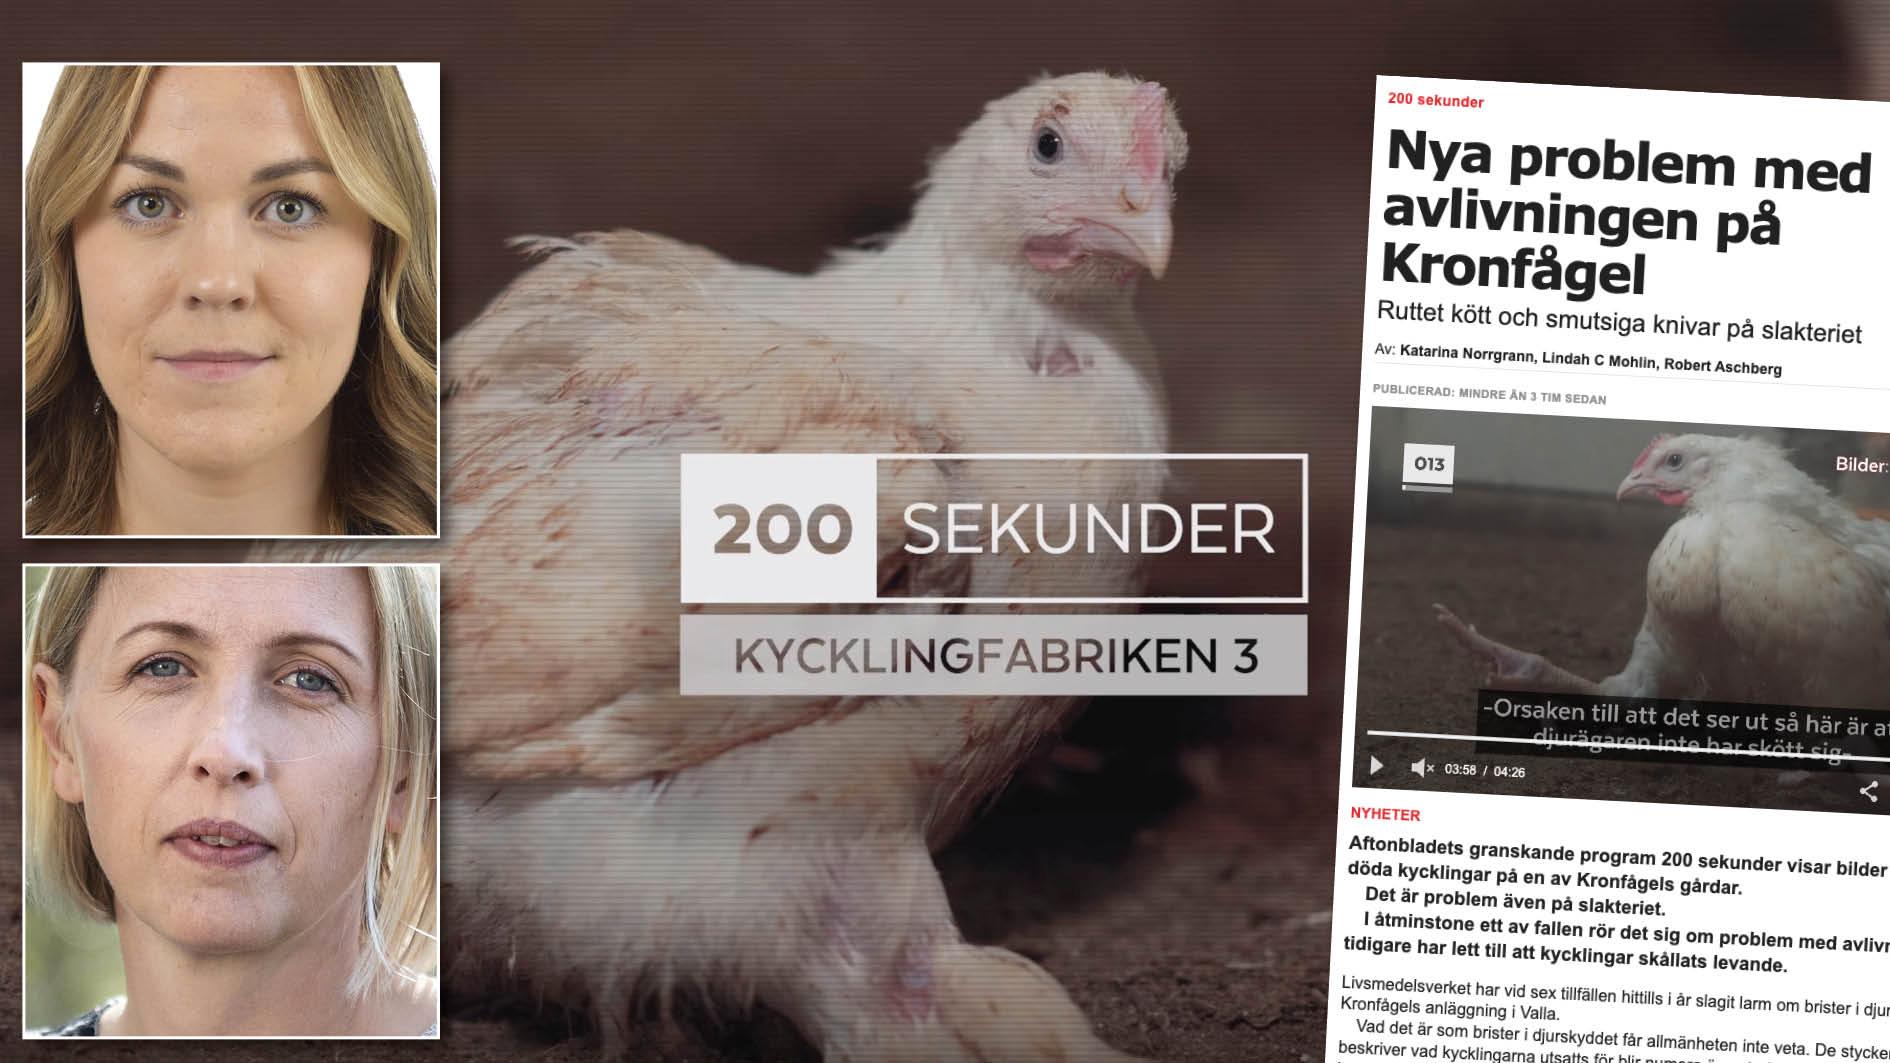 Aftonbladet har under veckan granskat kycklinguppfödningen i Sverige.  Det blir allt svårare att tro att det här är förfärliga undantag vi bevittnar. Det är dags att reagera kraftigare och systemförändrande, skriver Sofia Skönnbrink och Jytte Guteland.